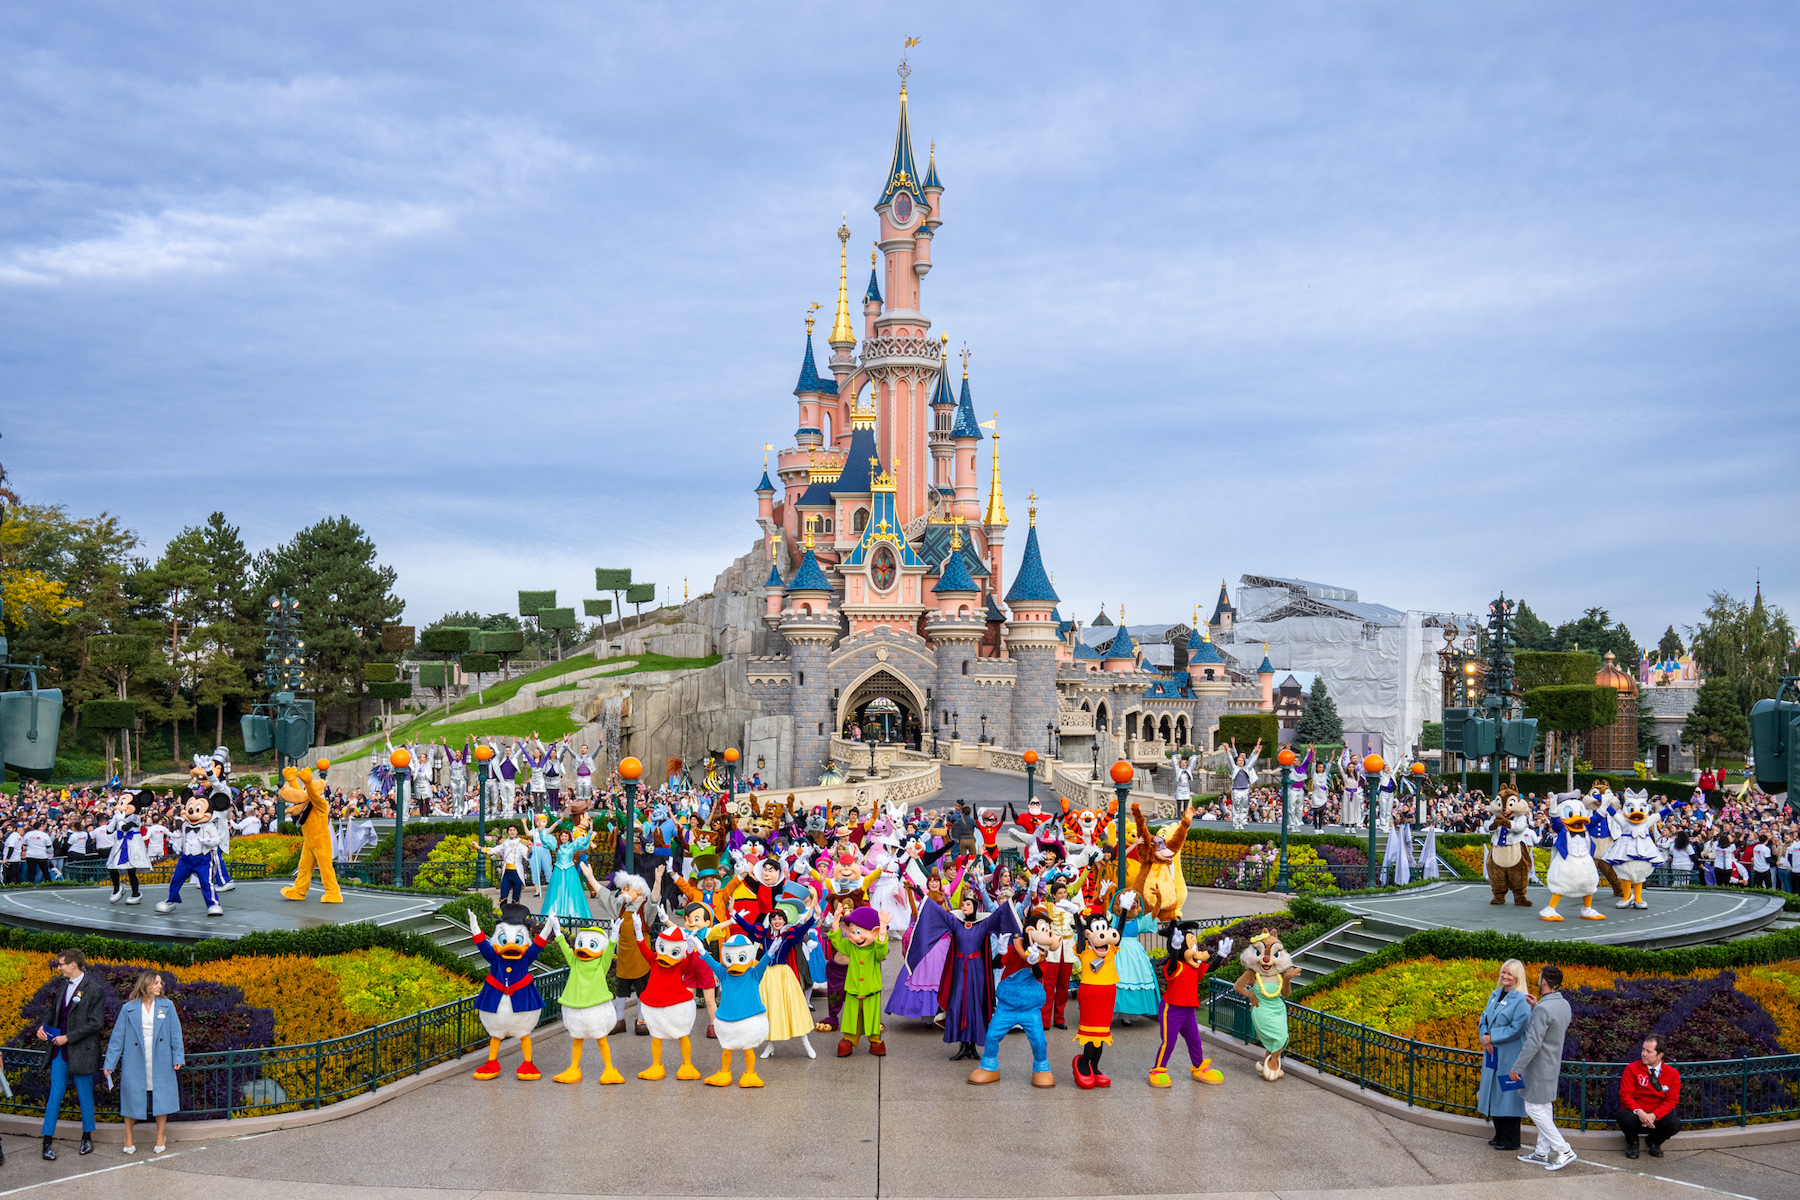 Disneyland Paris célèbre aujourd’hui les 100 ans de The Walt Disney Company avec une cérémonie exceptionnelle réunissant 100 Personnages Disney devant Le Château de la Belle au Bois Dormant ! 